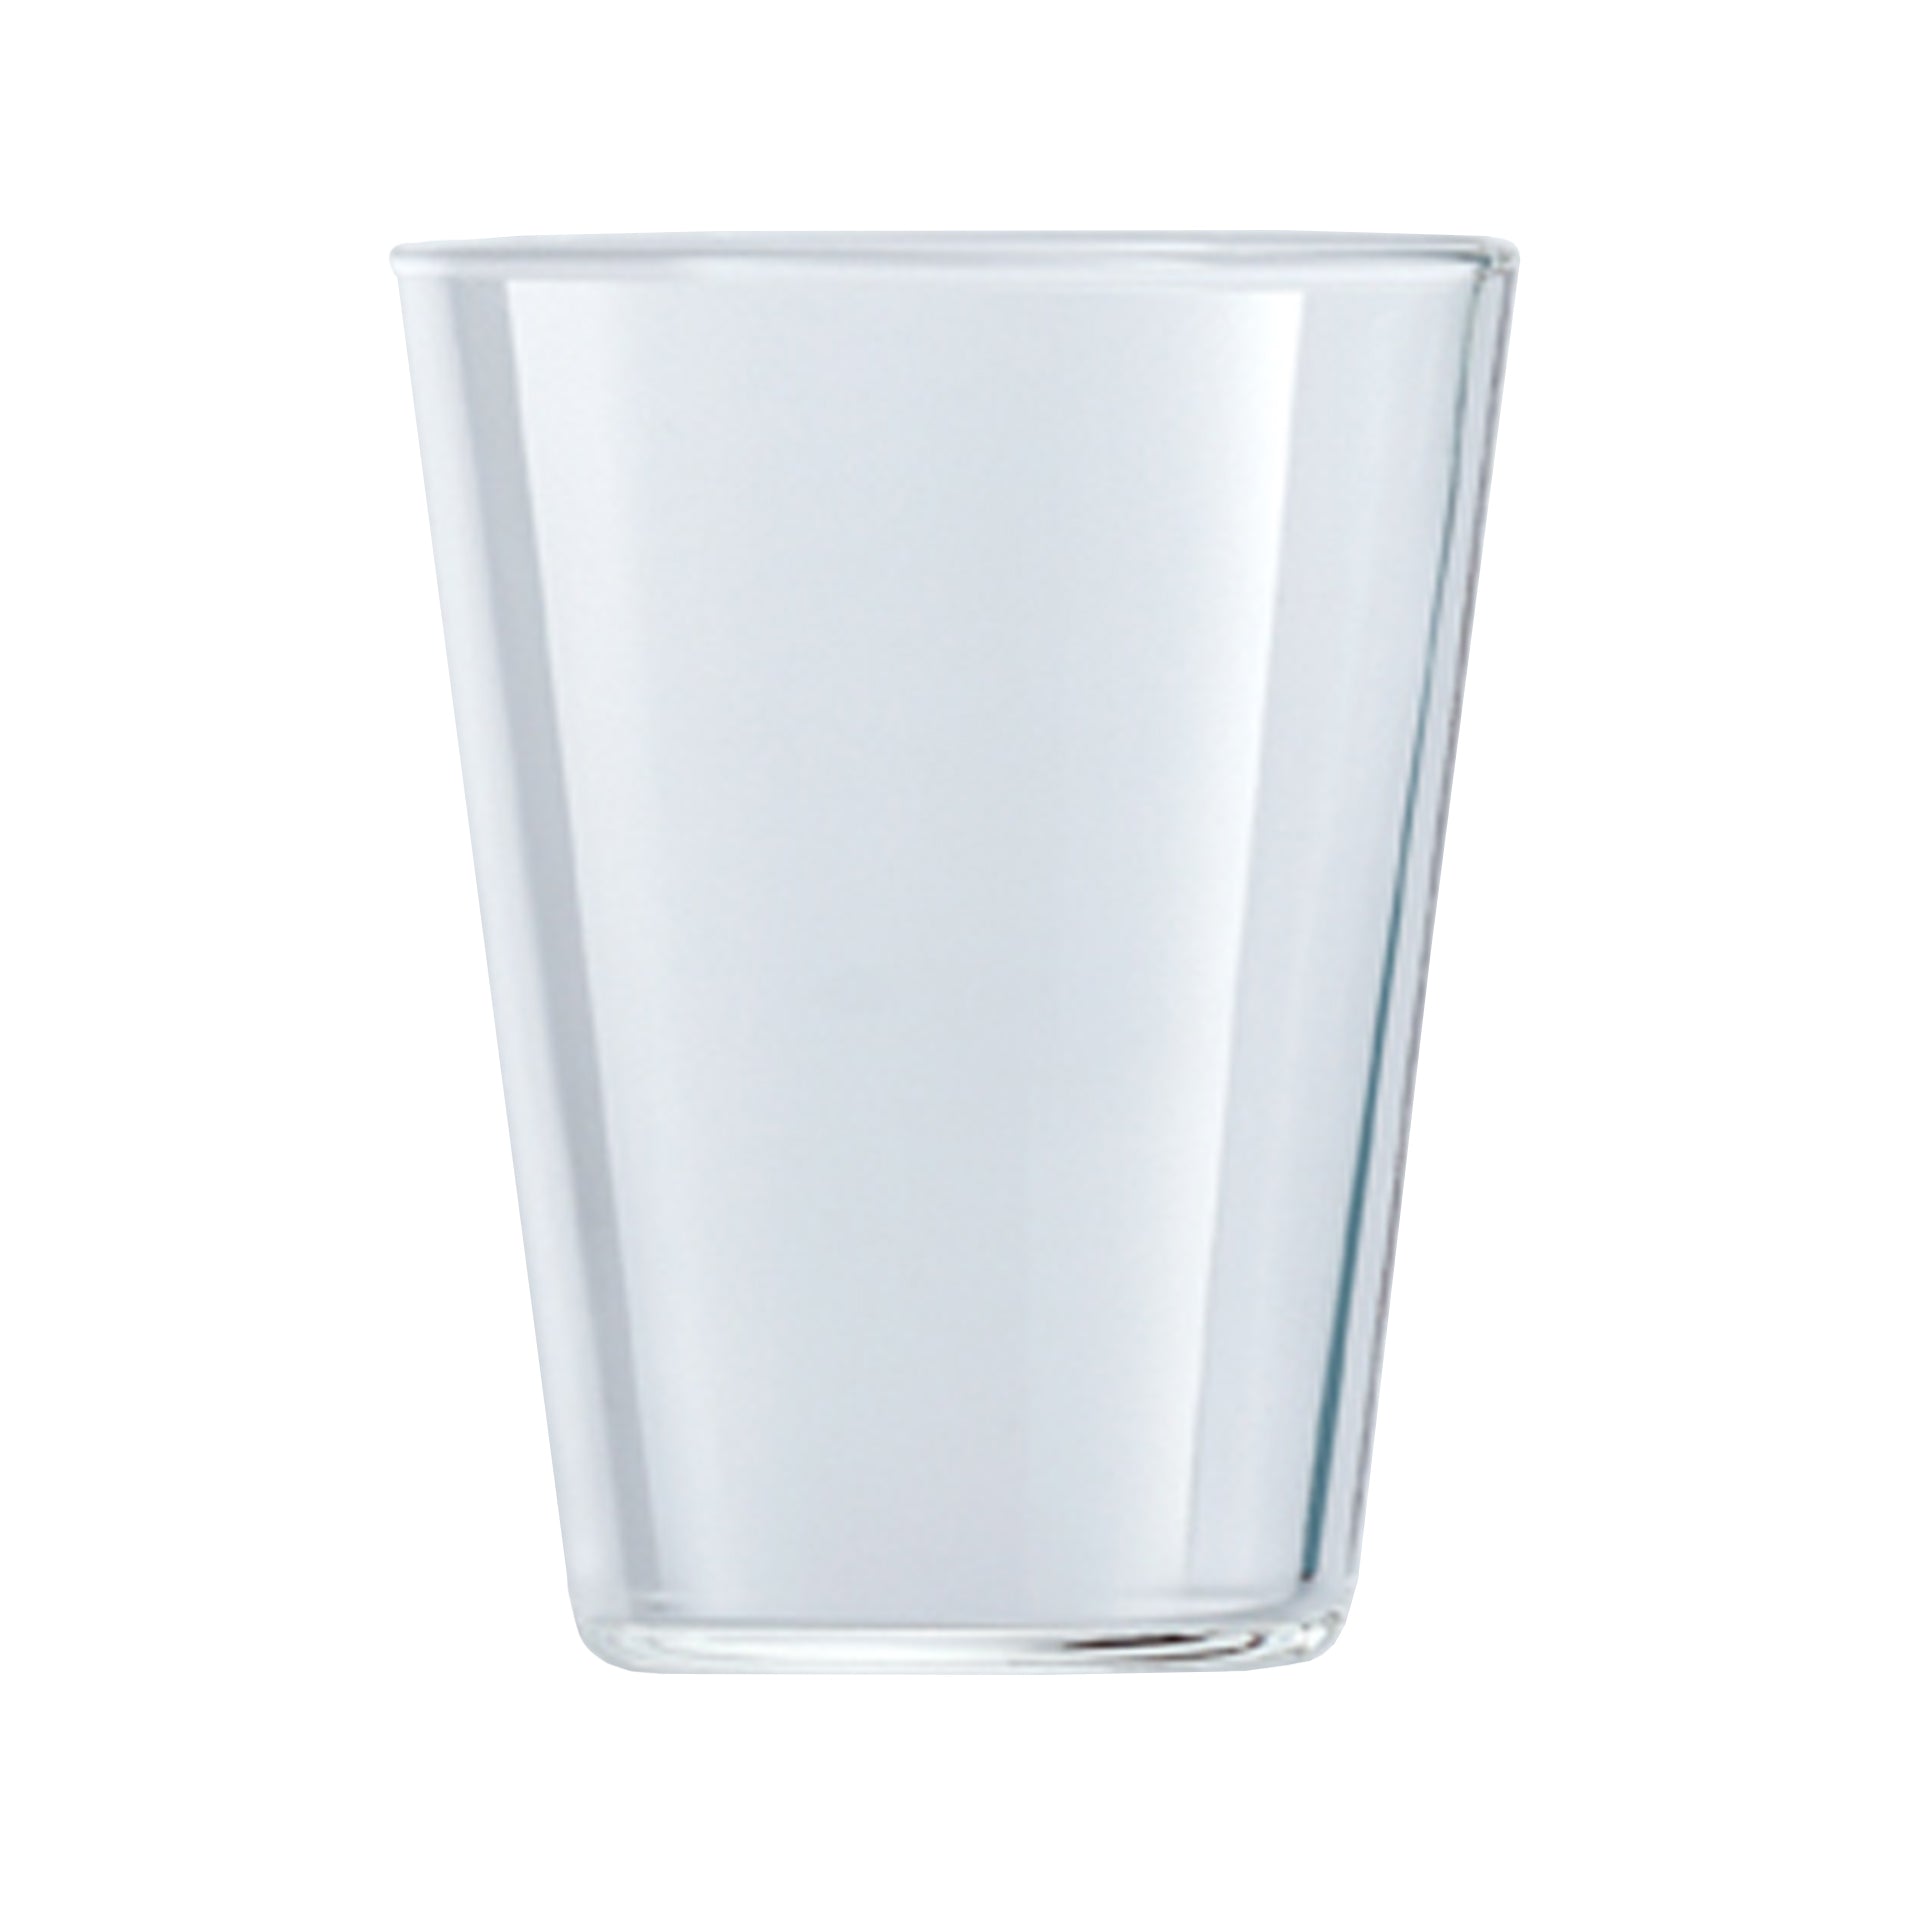 THE GLASS SHORT 240ml – YOHAKU KYOTO